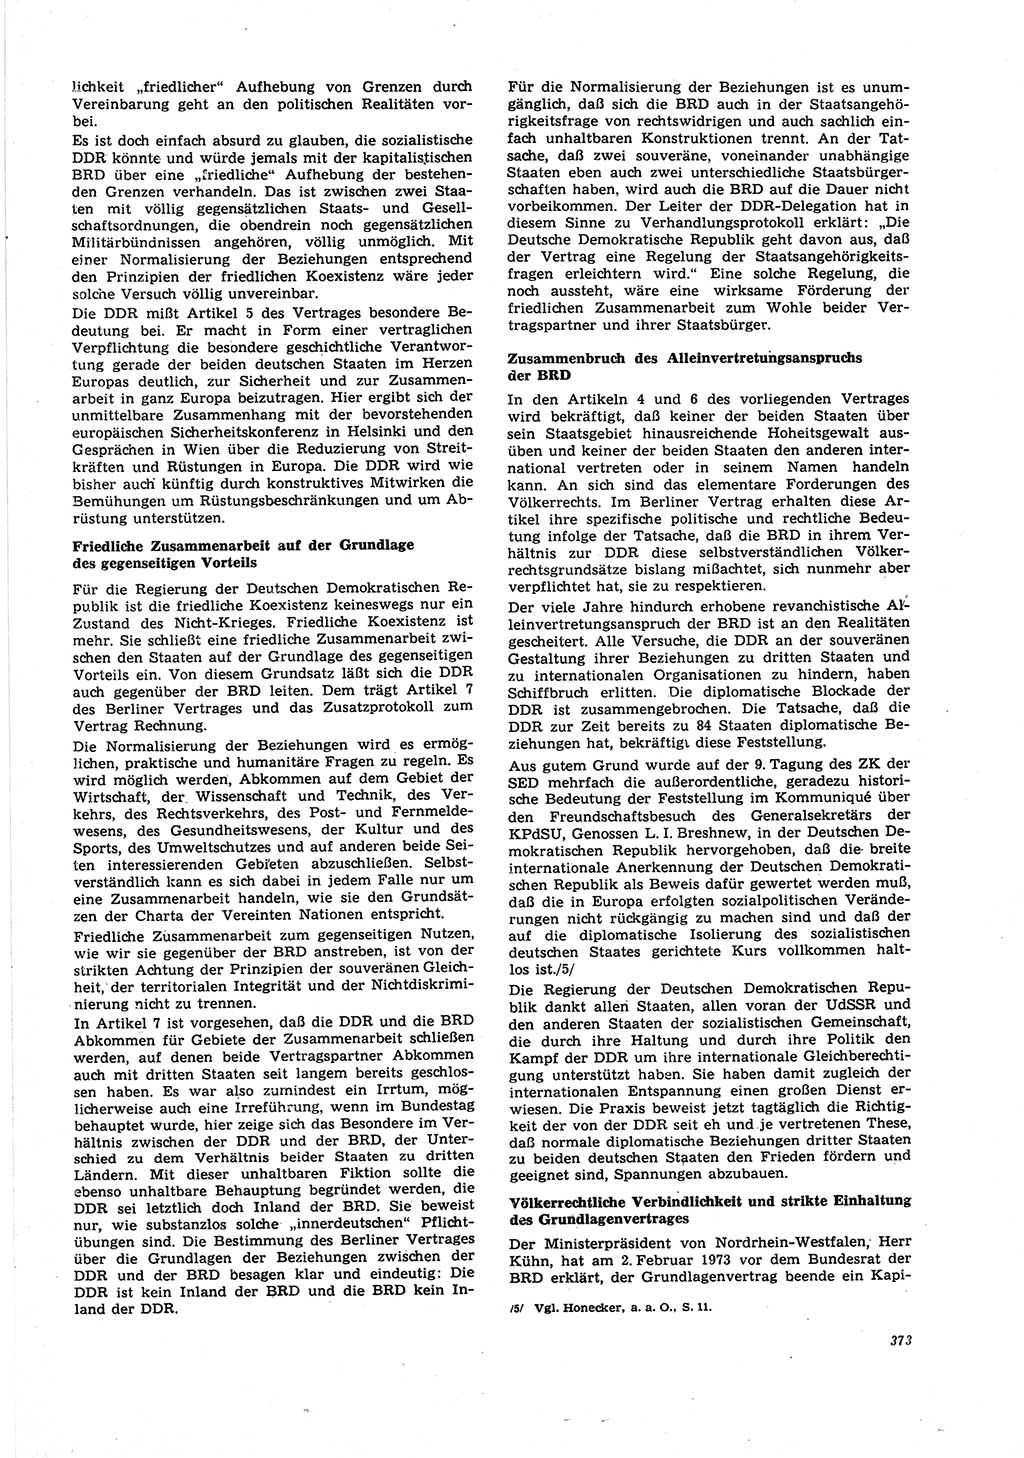 Neue Justiz (NJ), Zeitschrift für Recht und Rechtswissenschaft [Deutsche Demokratische Republik (DDR)], 27. Jahrgang 1973, Seite 373 (NJ DDR 1973, S. 373)